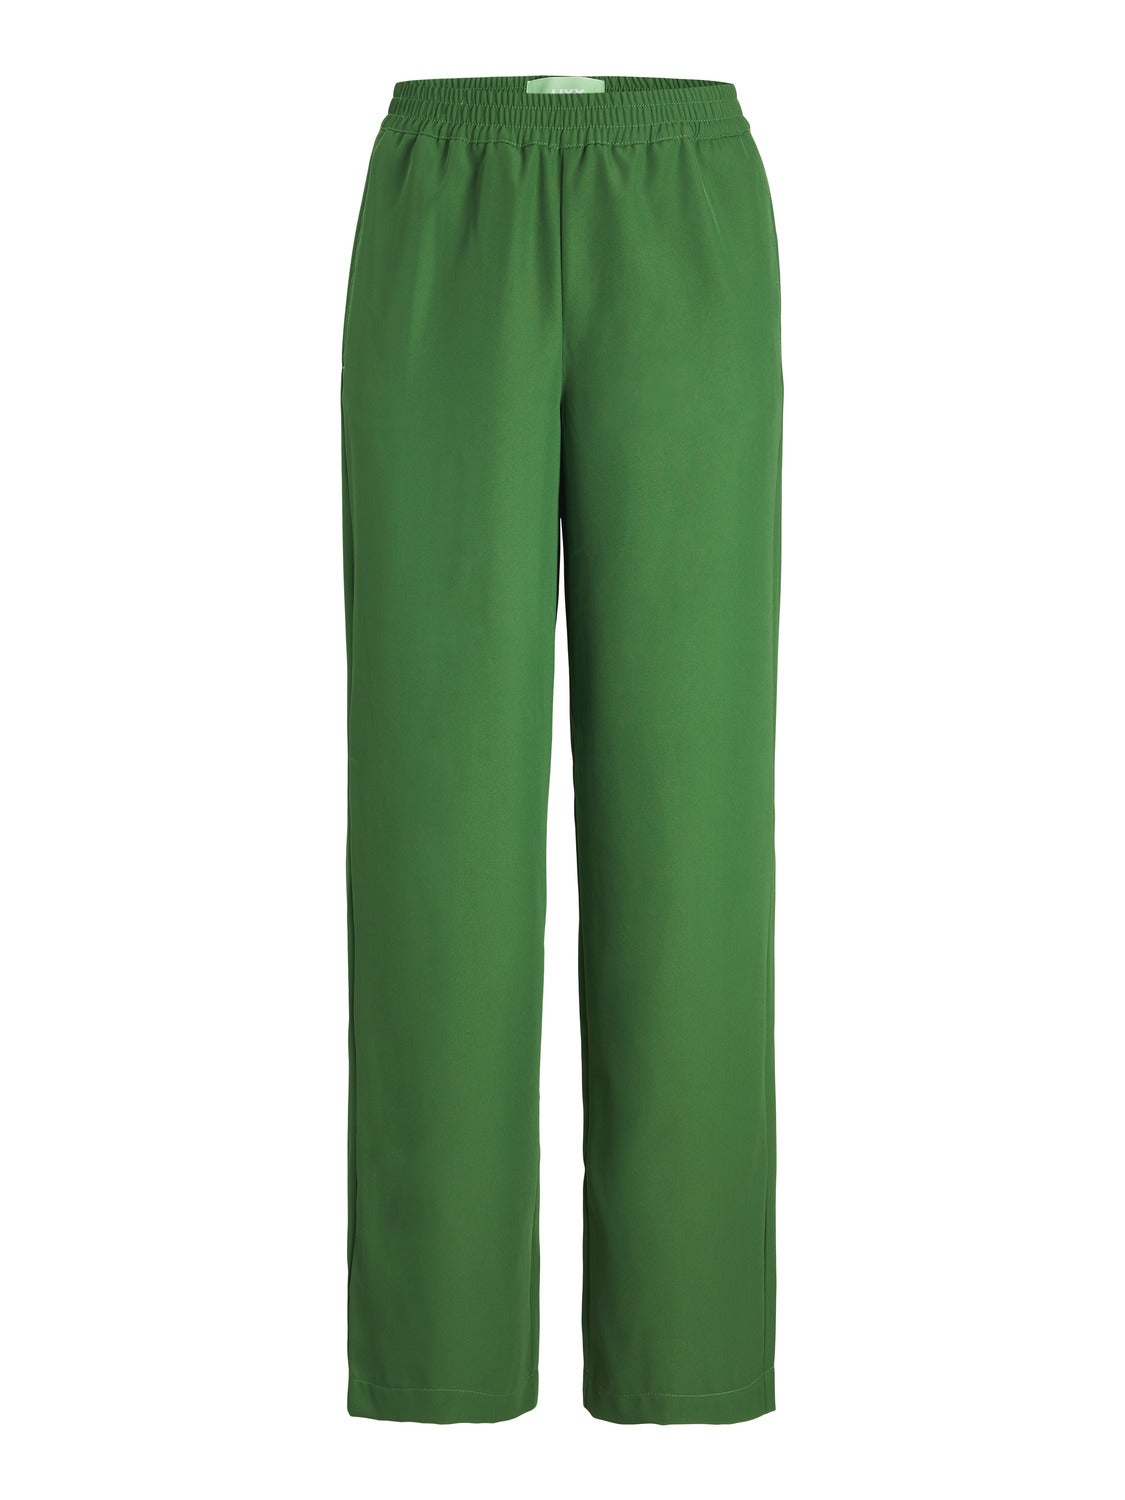 JXPOPPY Pantalones clásicos, Verde oscuro